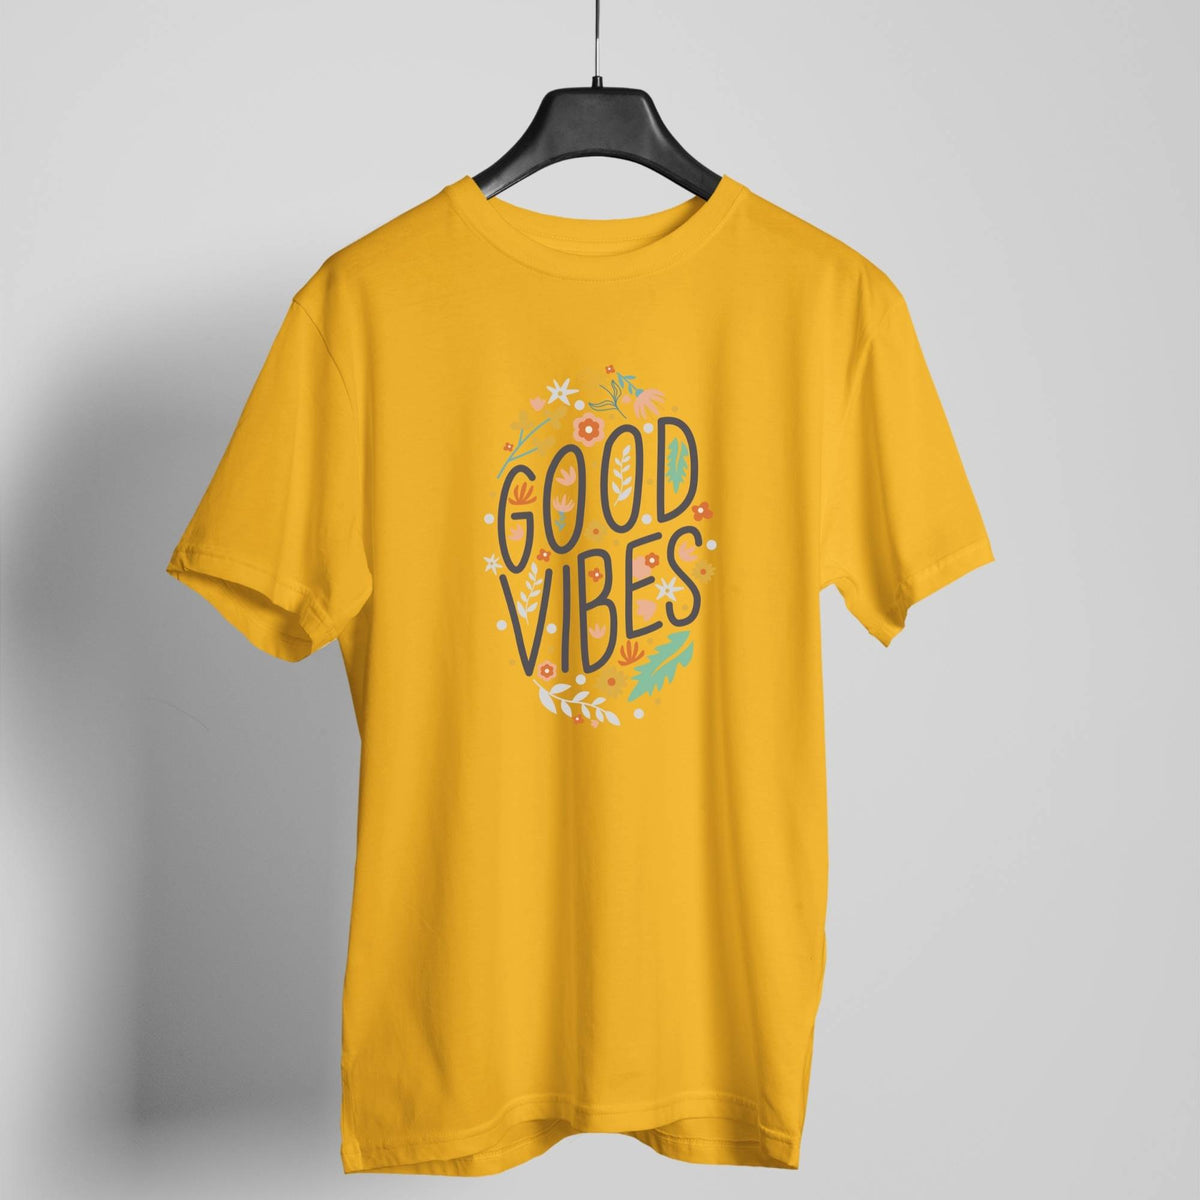 Good Vibes golden yellow t-shirt